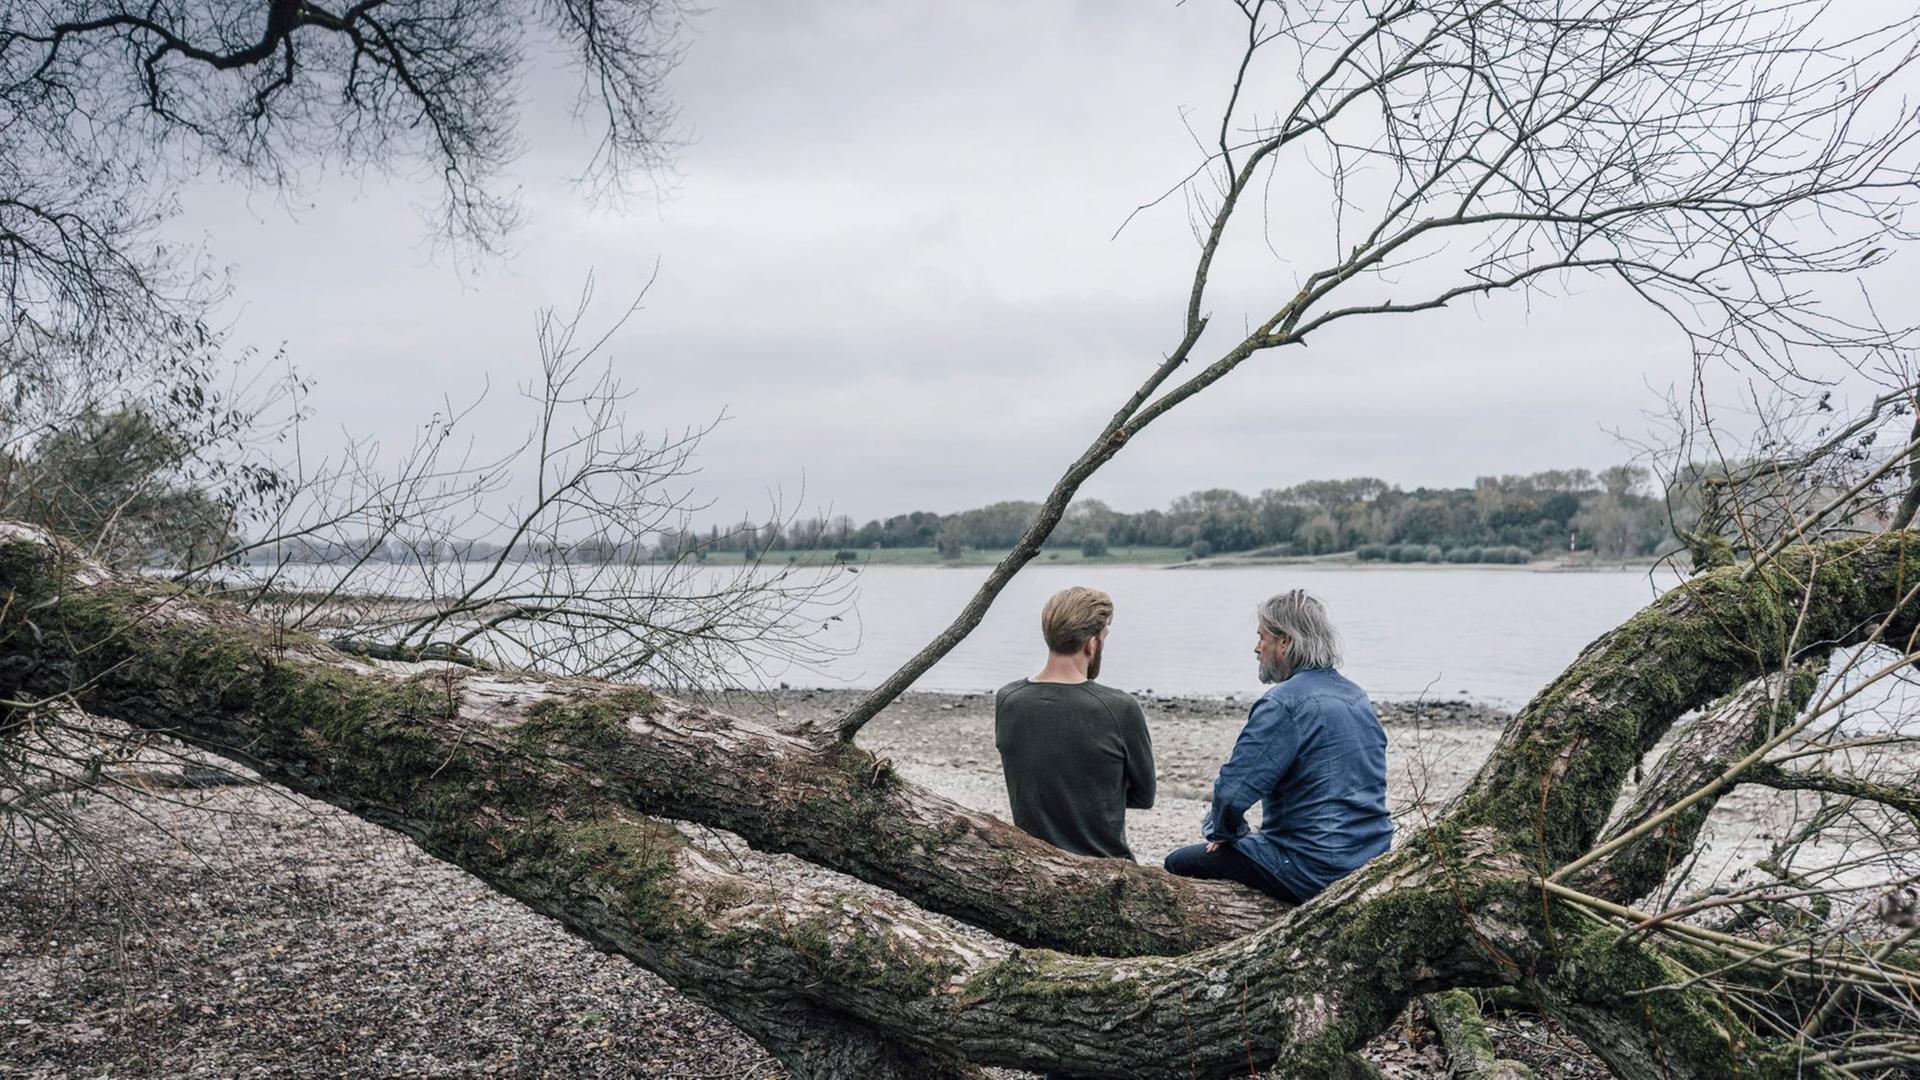 Vater und Sohn sitzen auf einem umgefallenen Baum an einem Fluss und unterhalten sich.